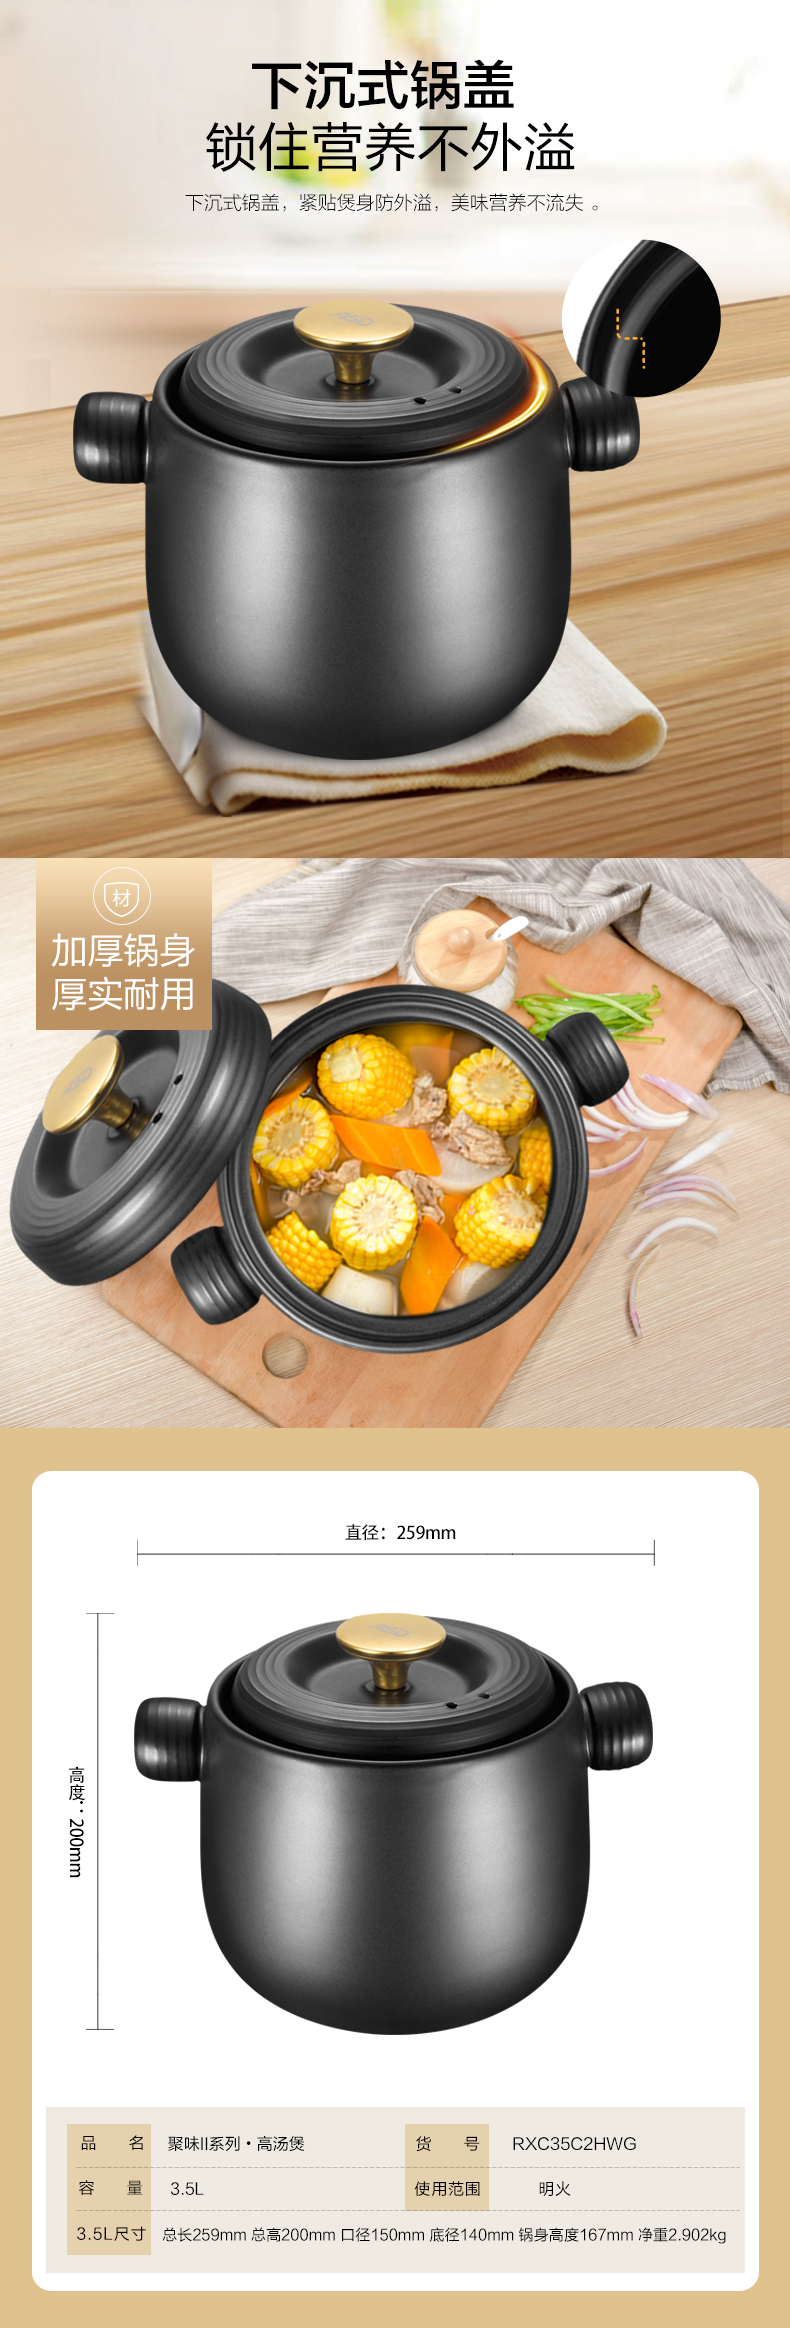 爱仕达陶瓷煲耐高温不外溢养生煲汤煲陶瓷砂锅煲聚味II系列陶瓷煲4.5L